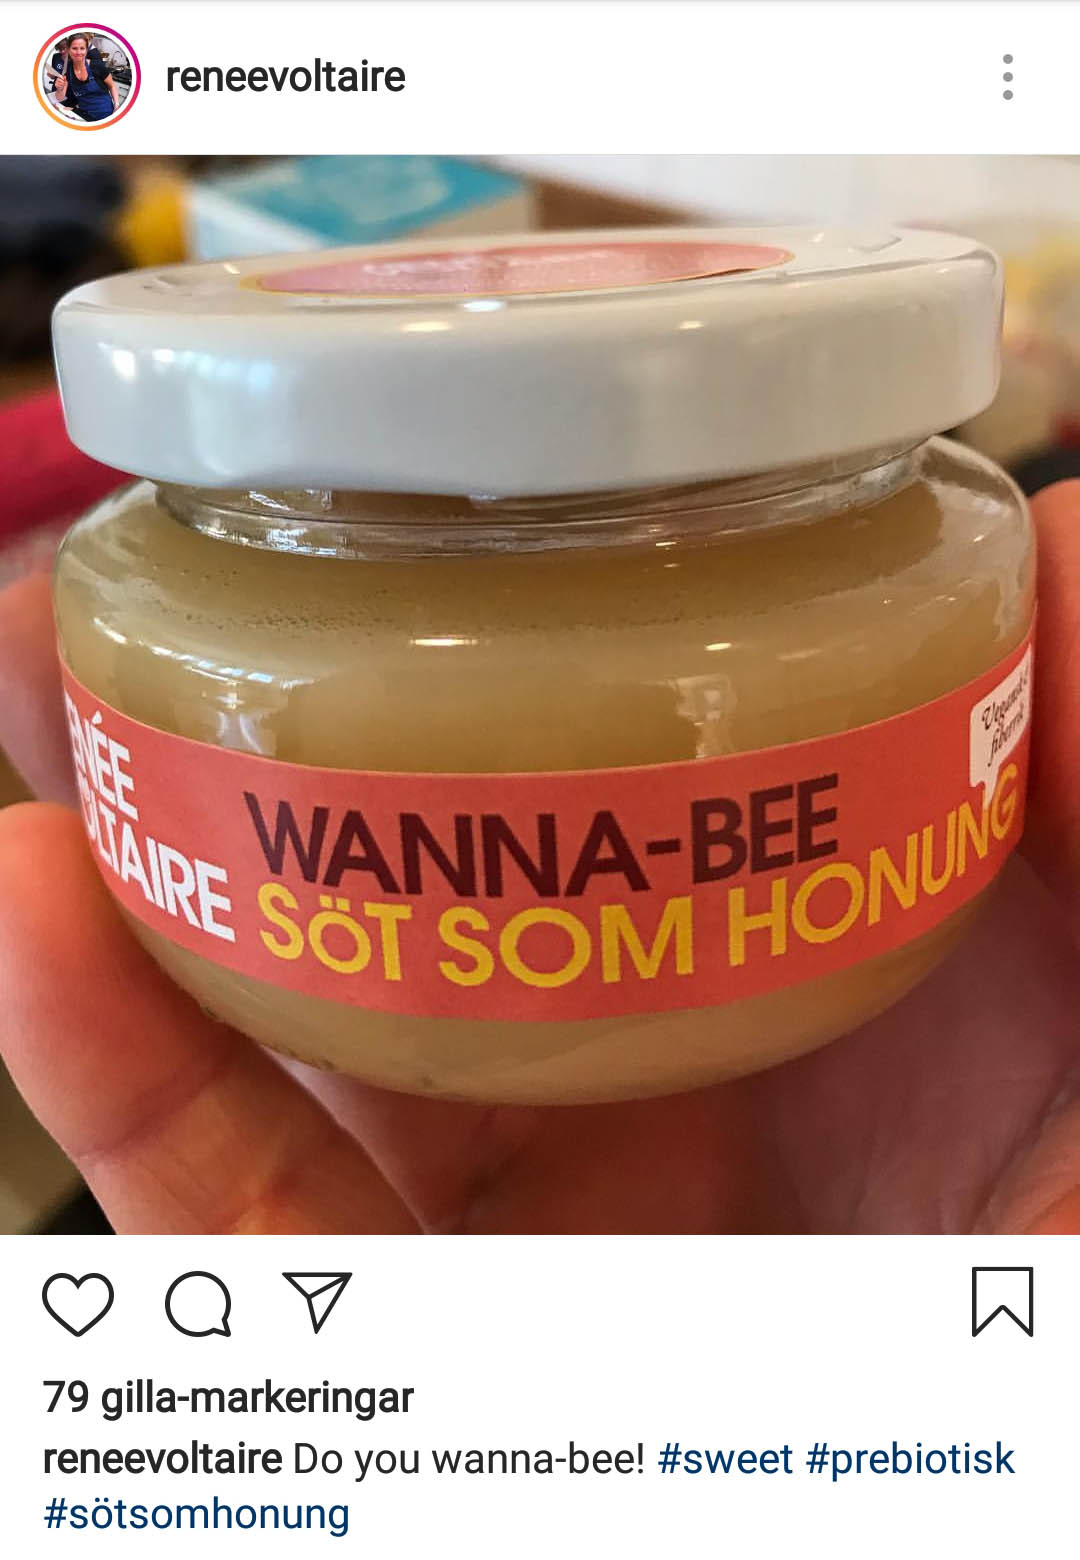 vegansk honung wanna-bee från renée voltaire